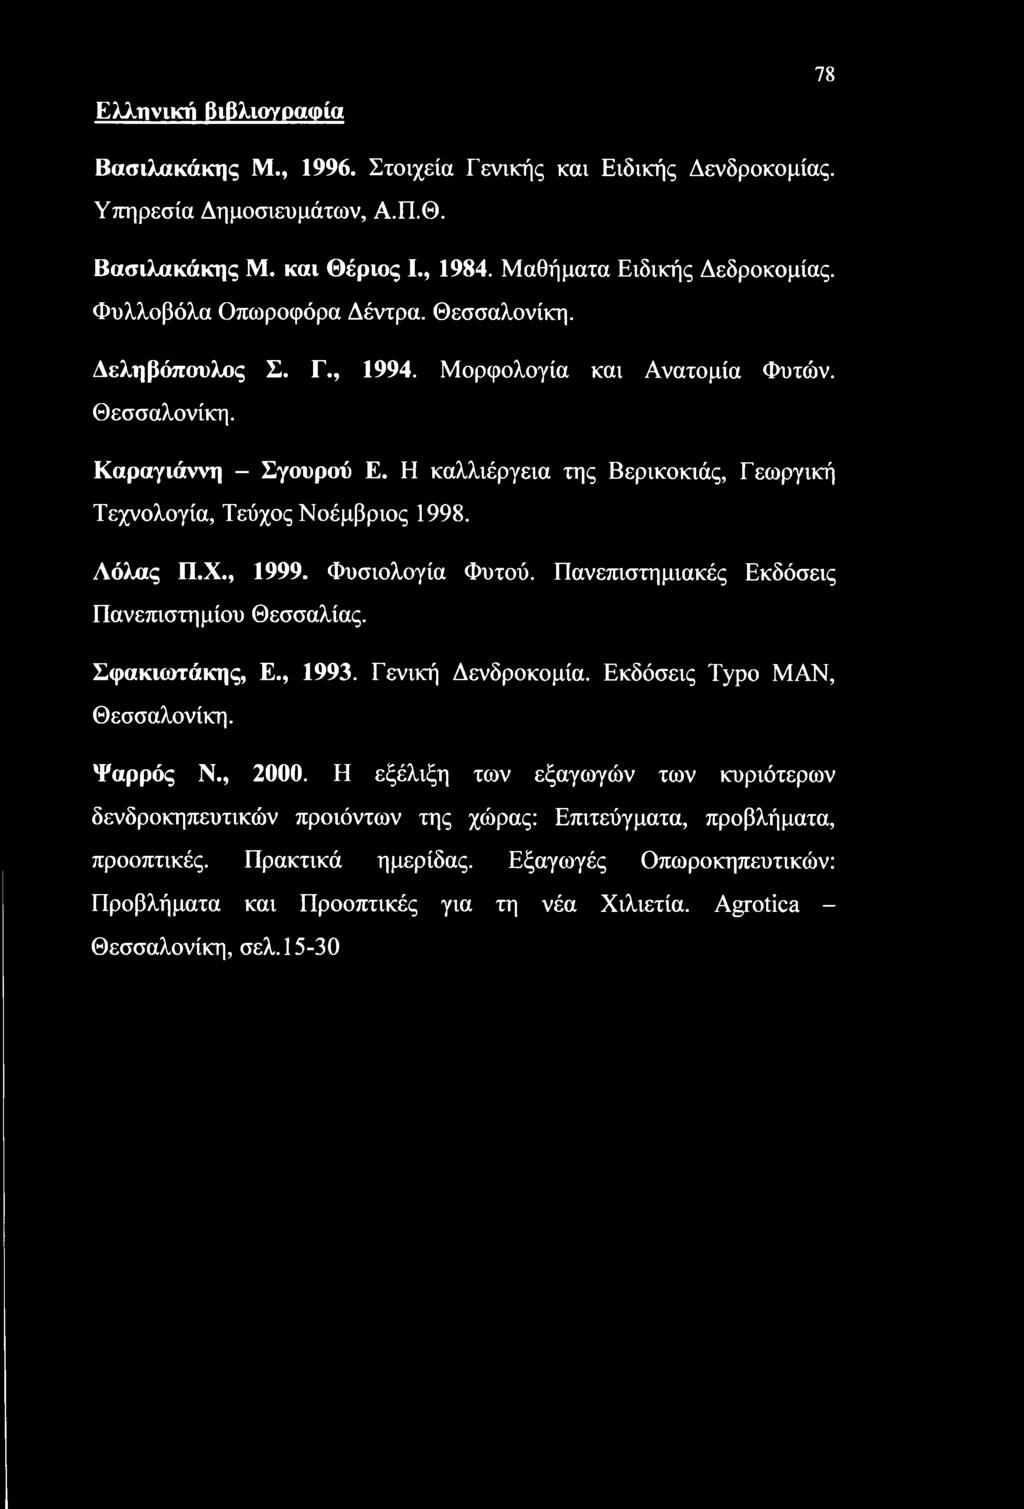 Η καλλιέργεια της Βερικοκιάς, Γεωργική Τεχνολογία, Τεύχος Νοέμβριος 1998. Αόλας Π.Χ., 1999. Φυσιολογία Φυτού. Πανεπιστημιακές Εκδόσεις Πανεπιστημίου Θεσσαλίας. Σφακιωτάκης, Ε., 1993.